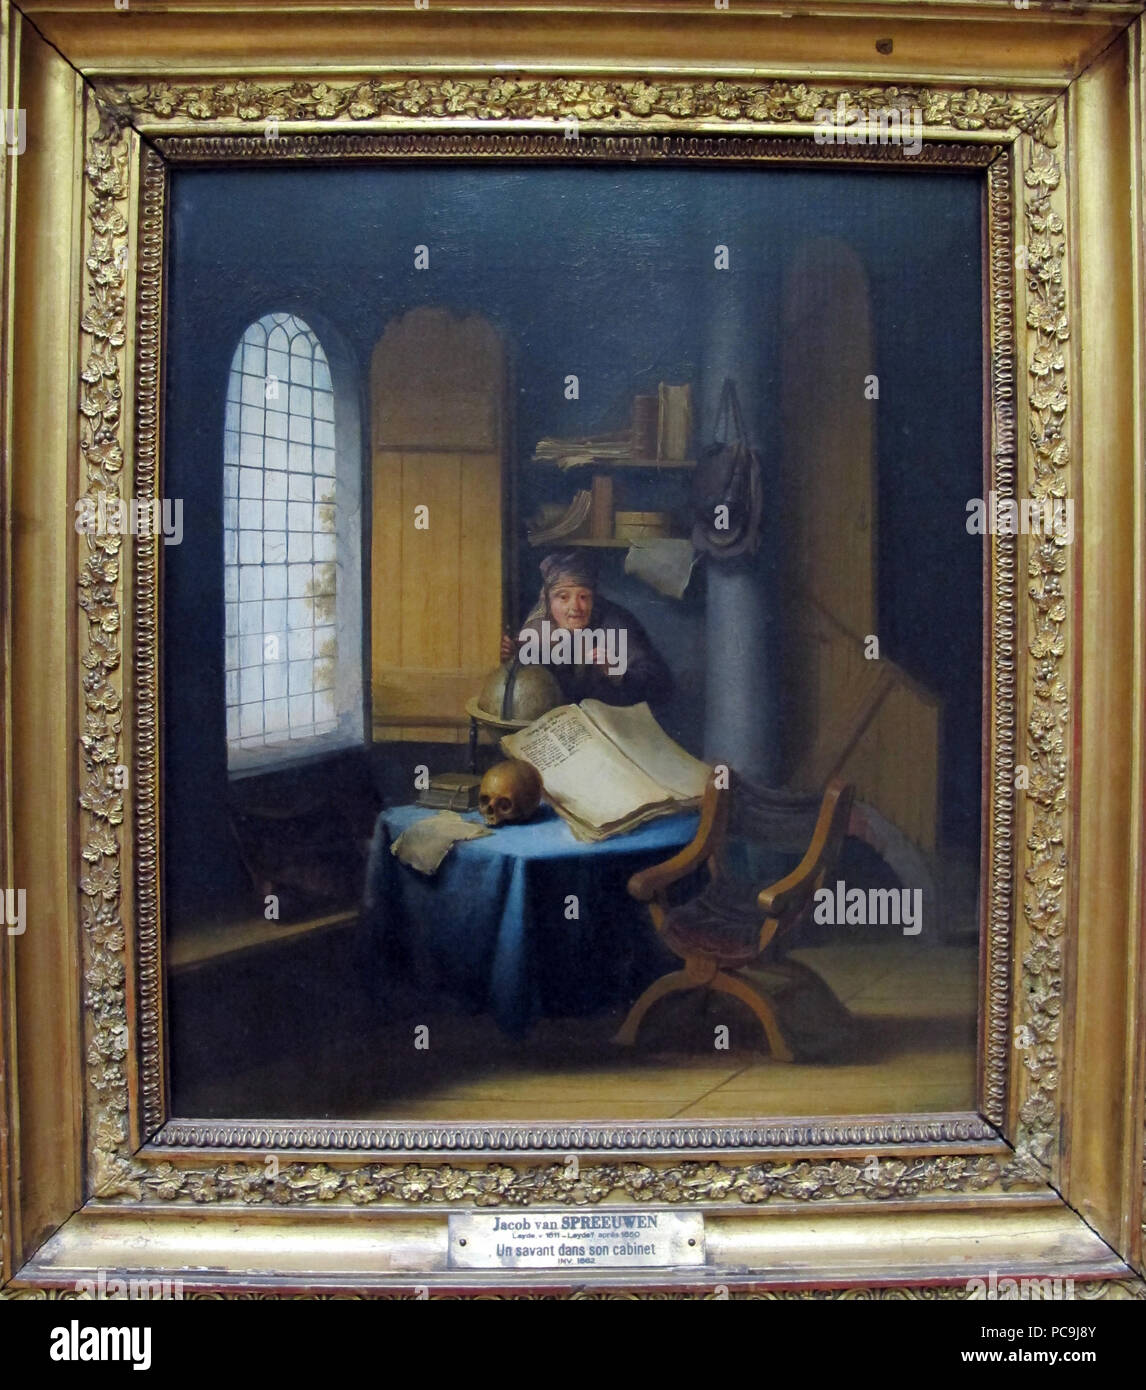 305 Jacob van spreeuwen, uno scienziato nel suo studio con lezione di vanità, 1630 ca. 01 Foto Stock